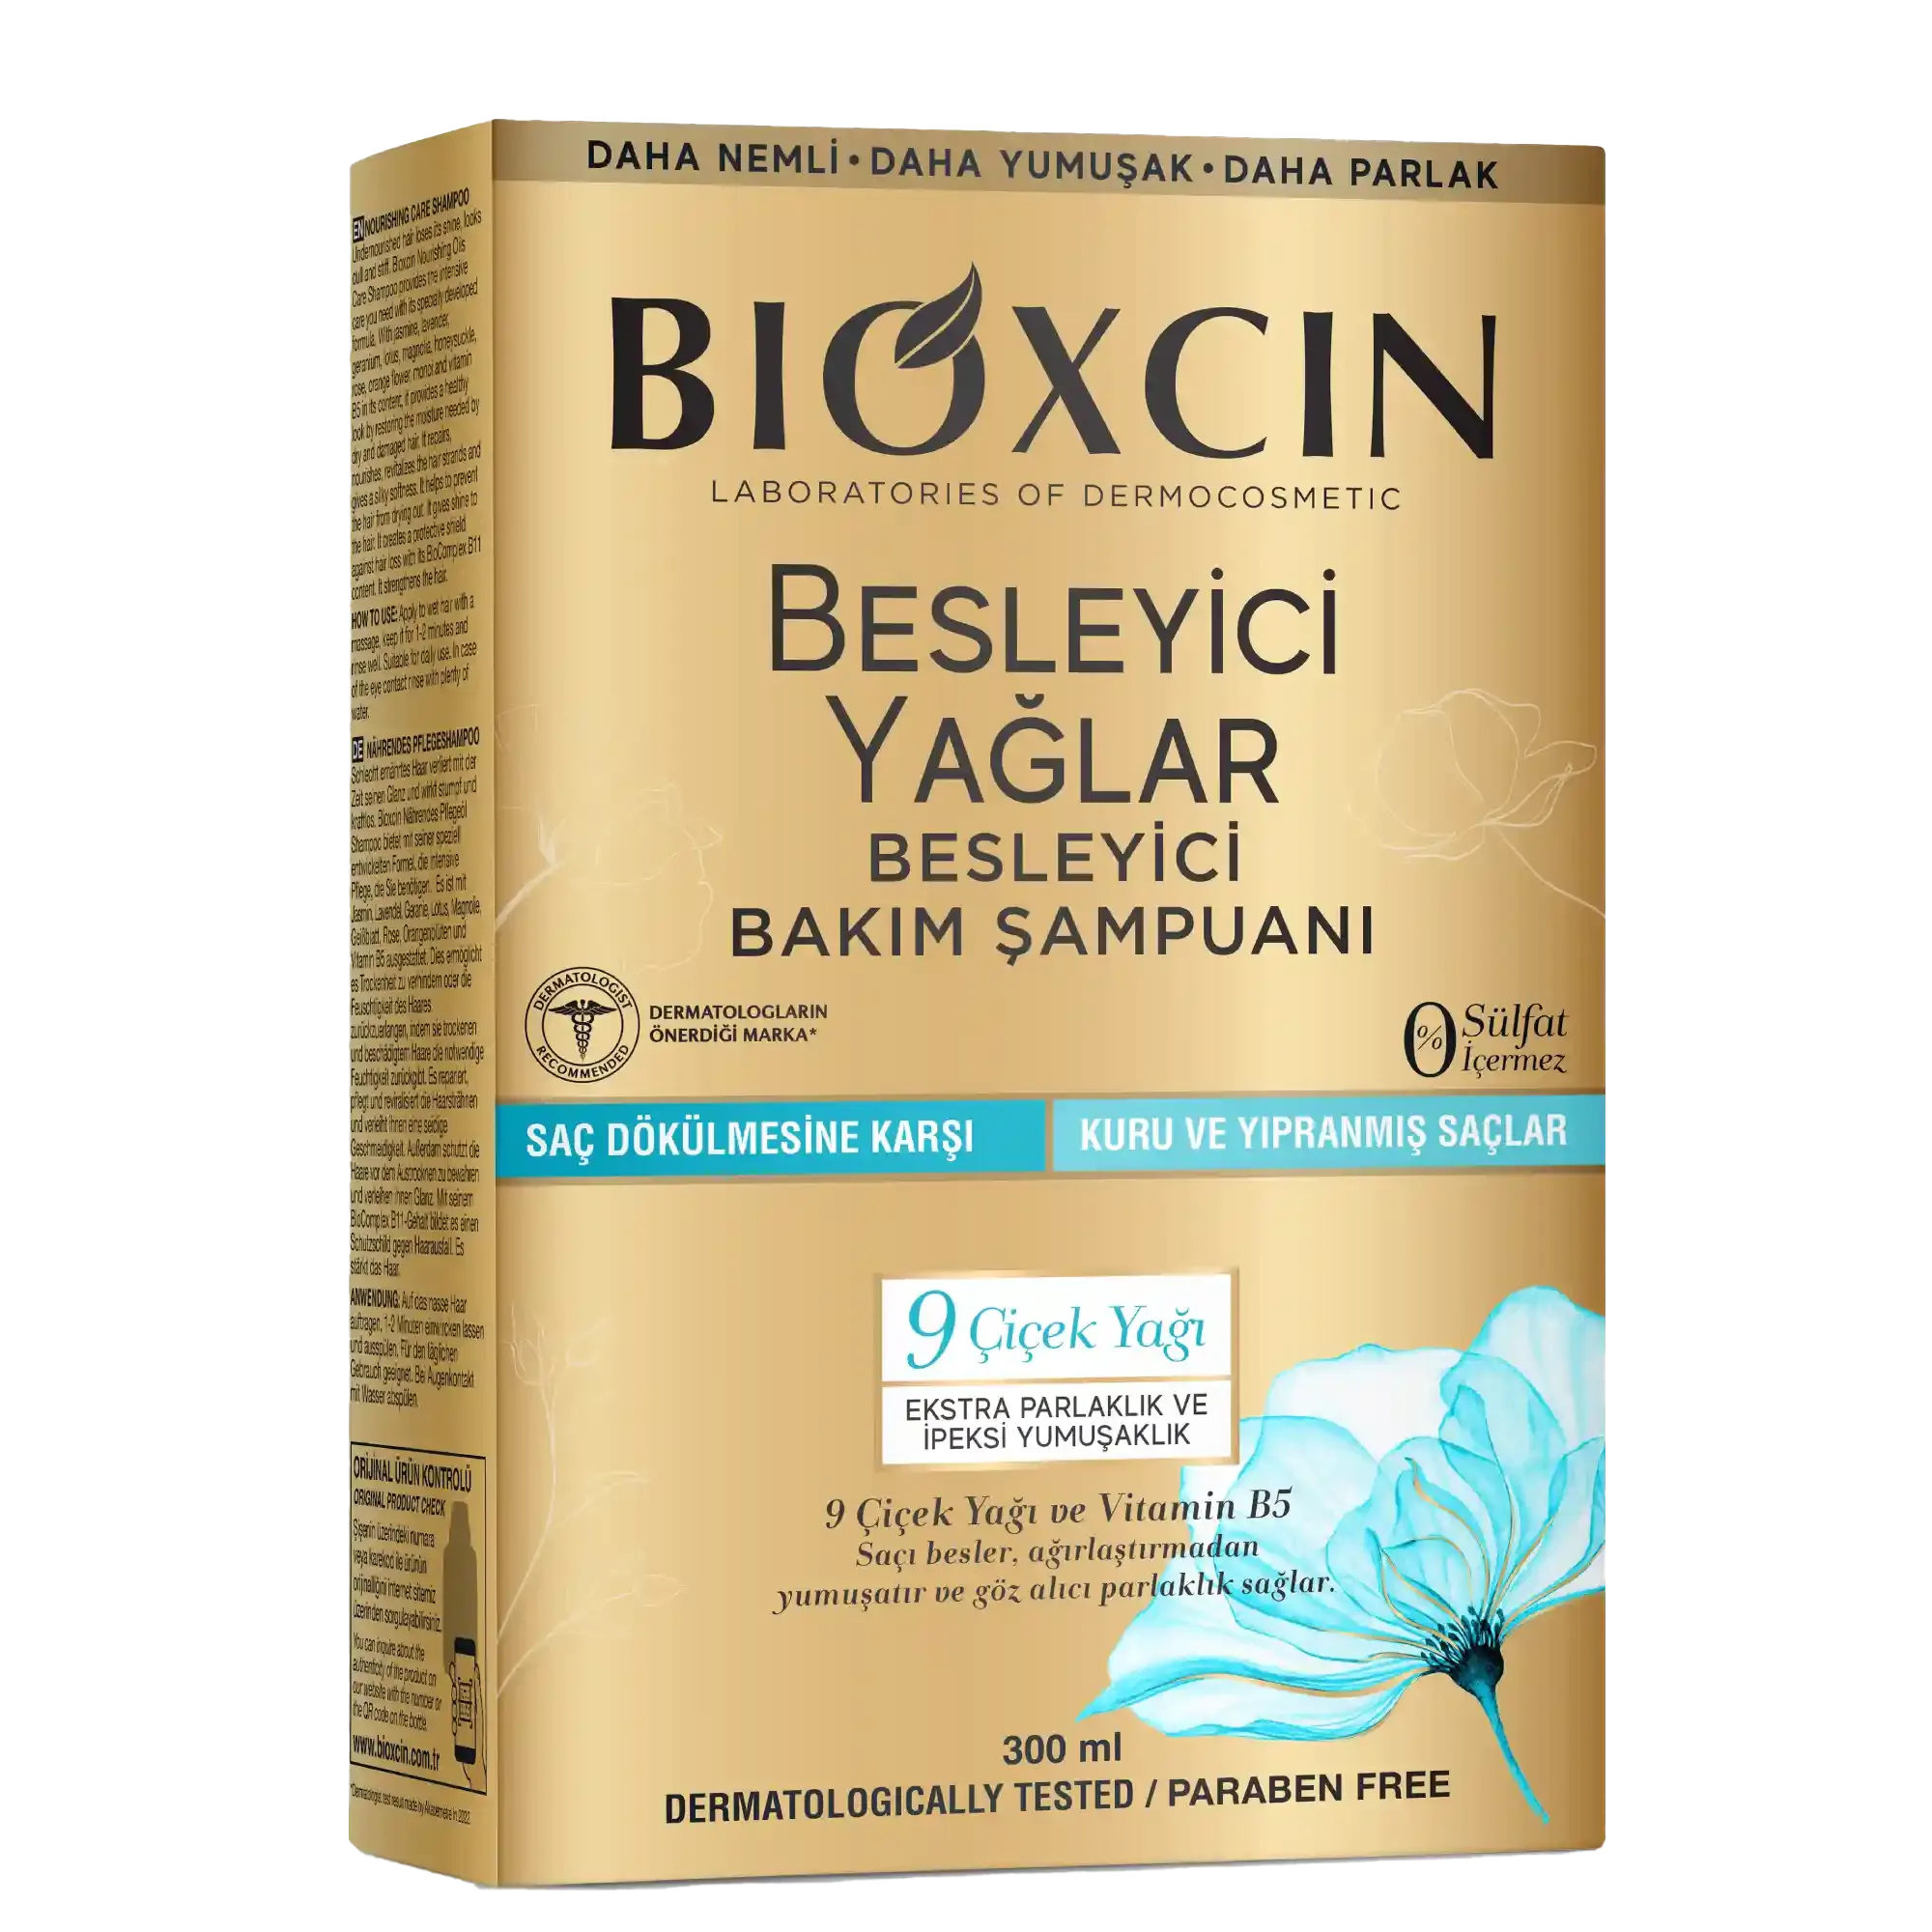 Bioxcin Besleyici Yağlar